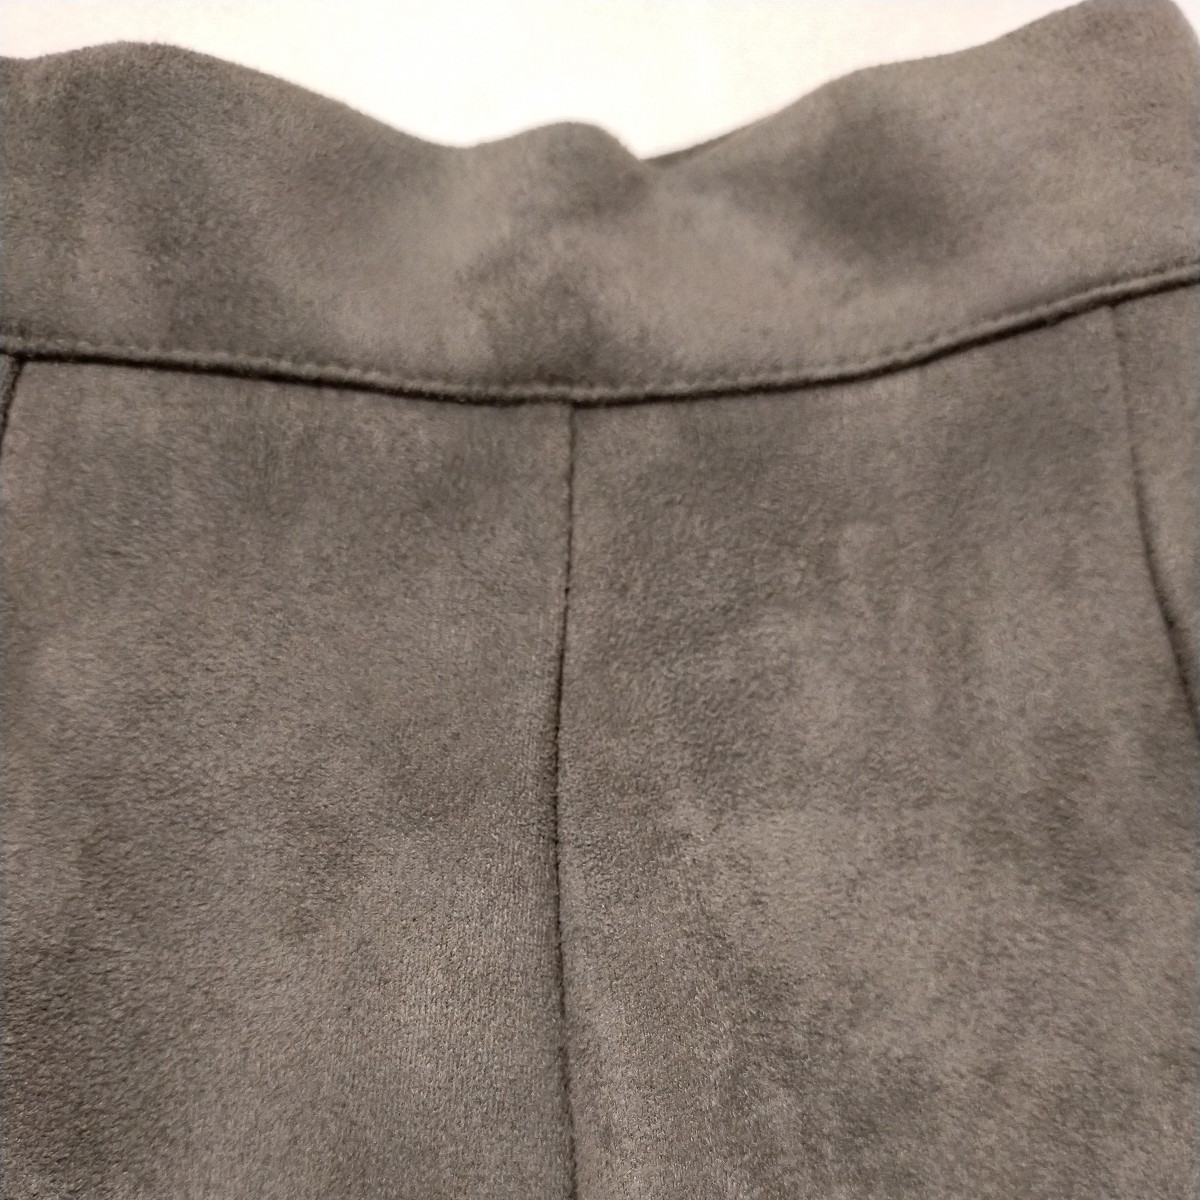 XOXO kisskiss юбка брюки зеленый зеленый шт. форма плиссировать Mini мини-юбка под замшу ska хлеб S размер б/у ученик старшей школы 